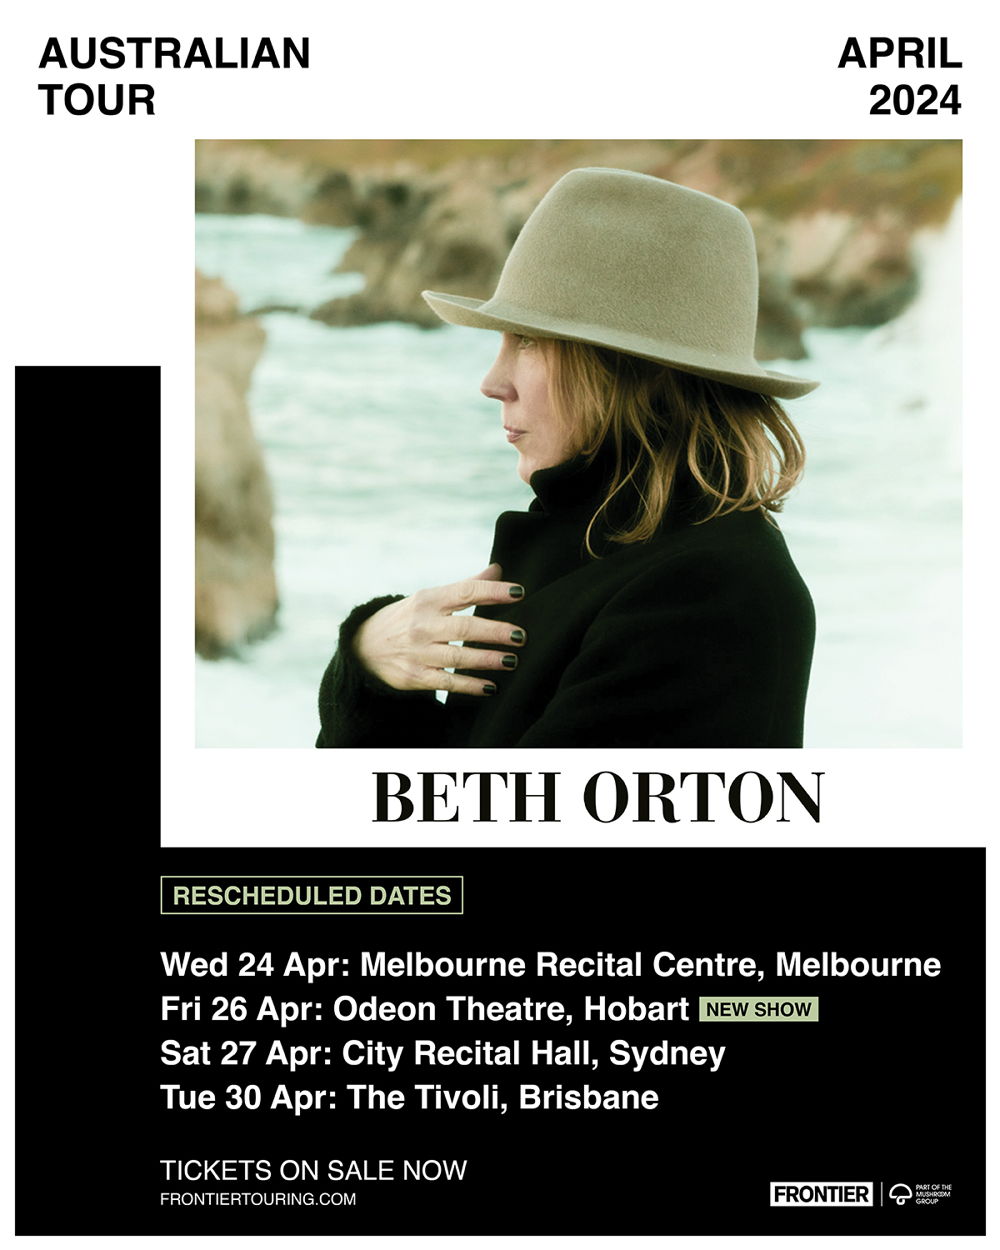 Beth Orton Tour Artwork 1200x1500